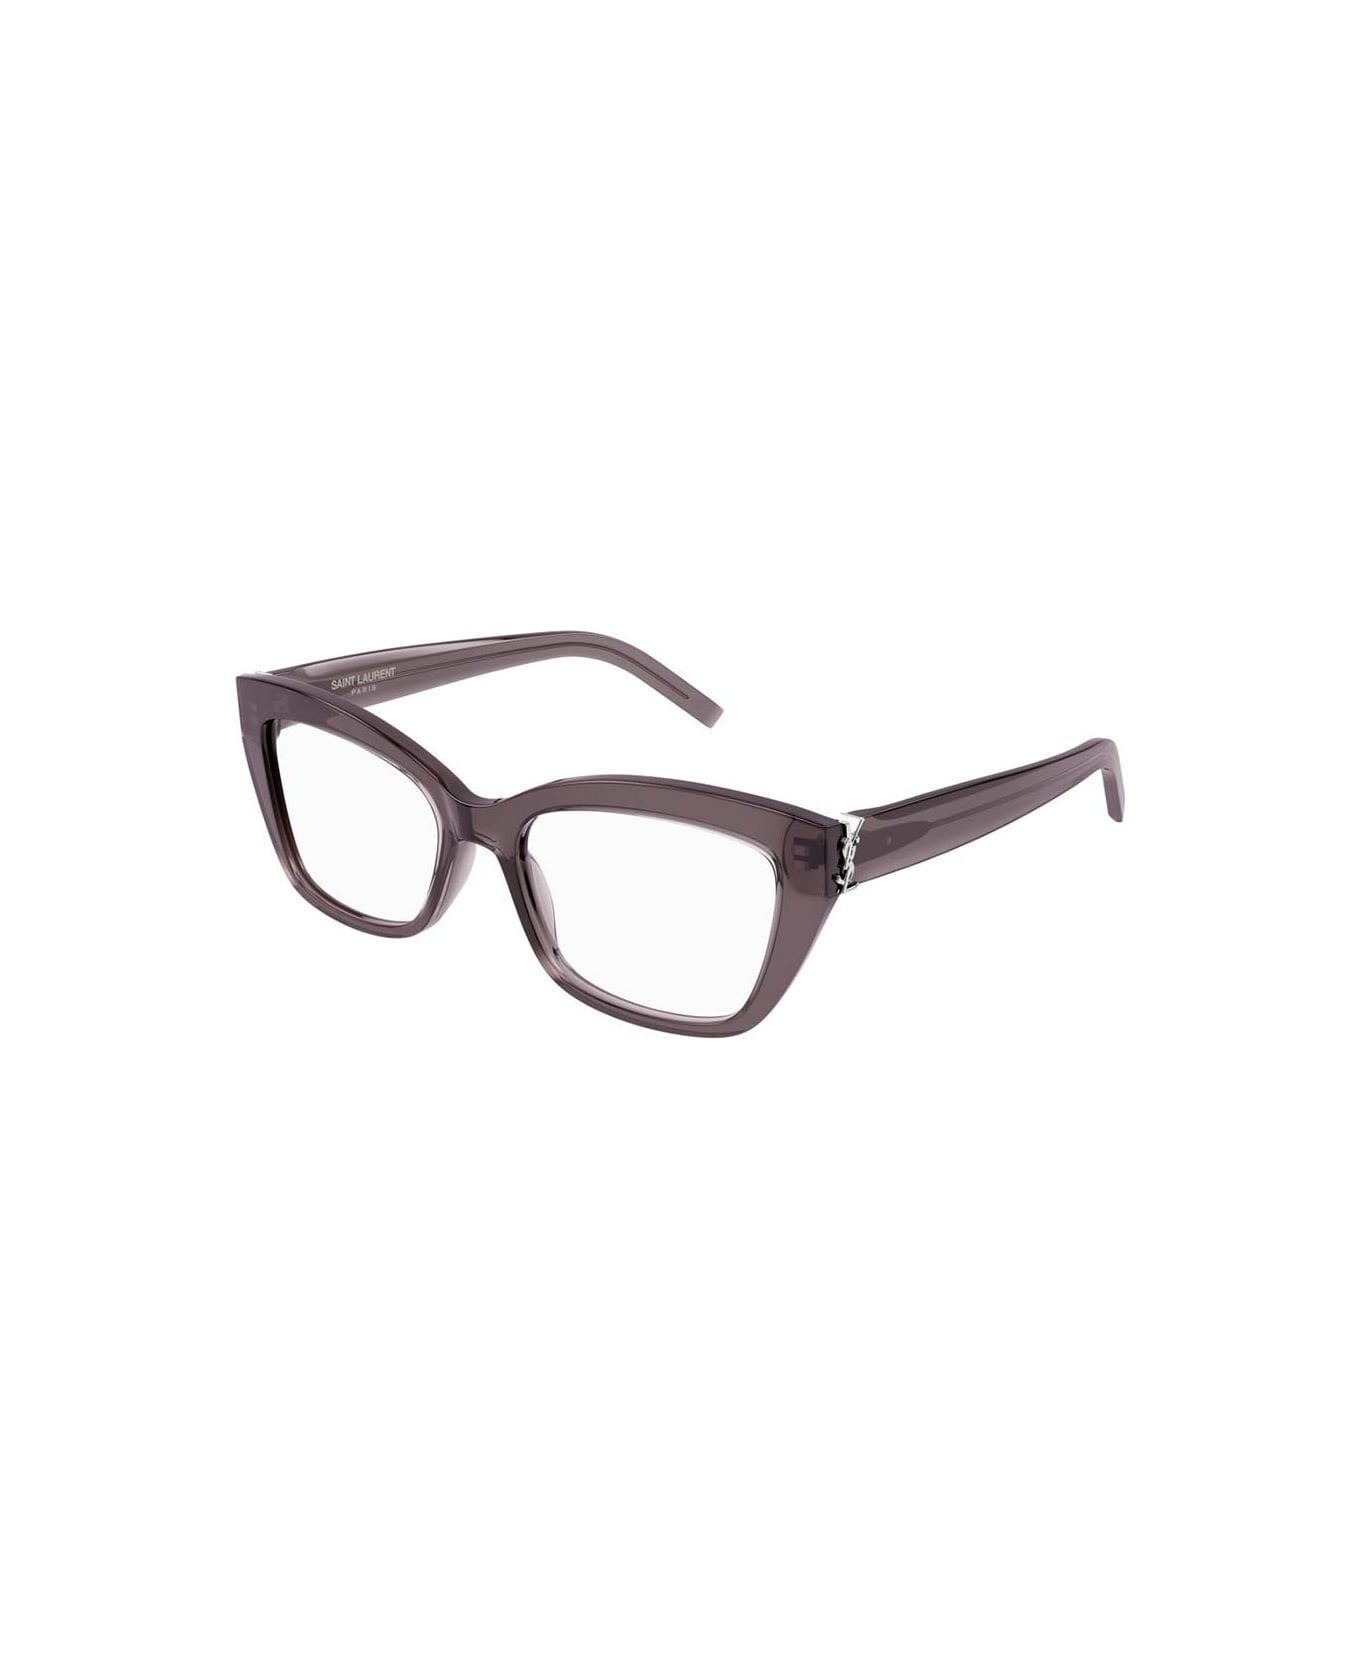 Saint Laurent Eyewear Glasses - Grigio